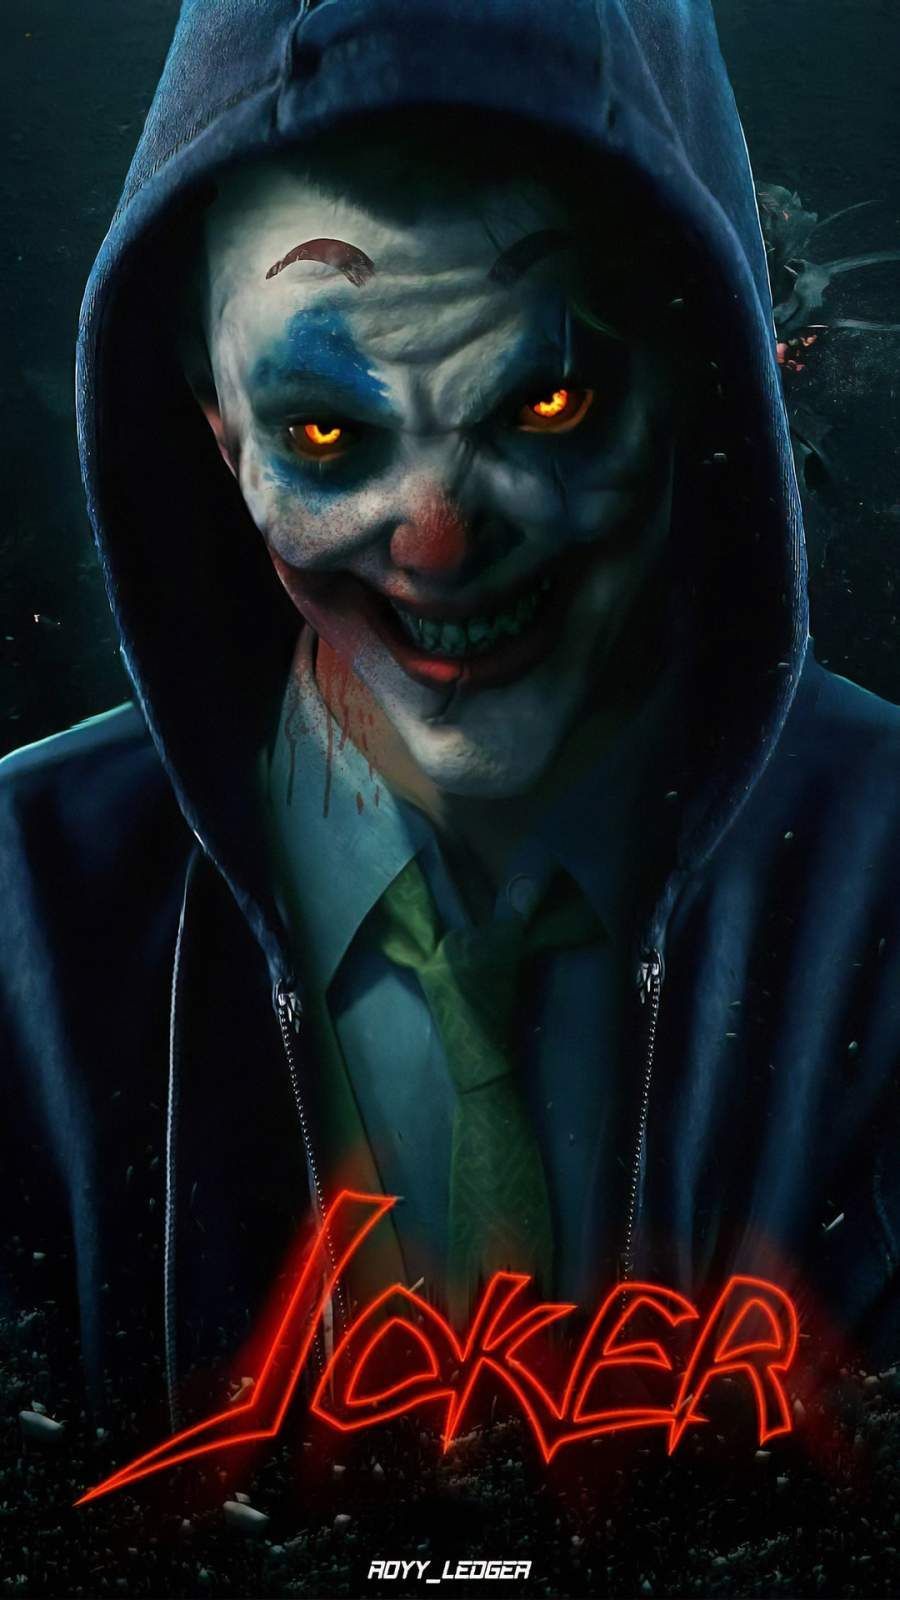 Scary Joker Image Free Download